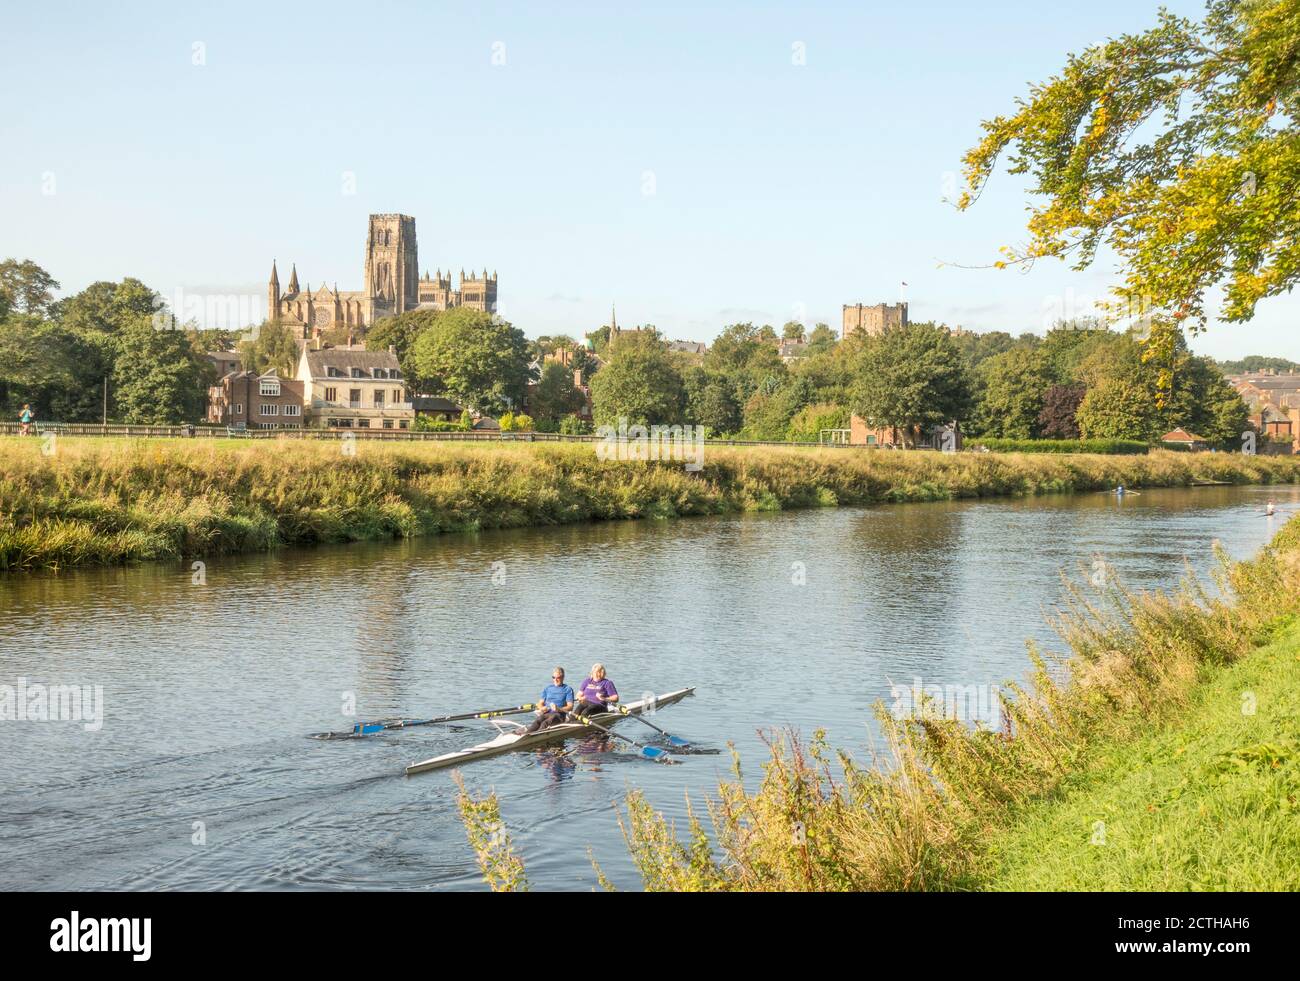 Coppia matura scolpire o canottare sul fiume con la cattedrale e il castello sullo sfondo, Durham città, Co. Durham, Inghilterra, Regno Unito Foto Stock